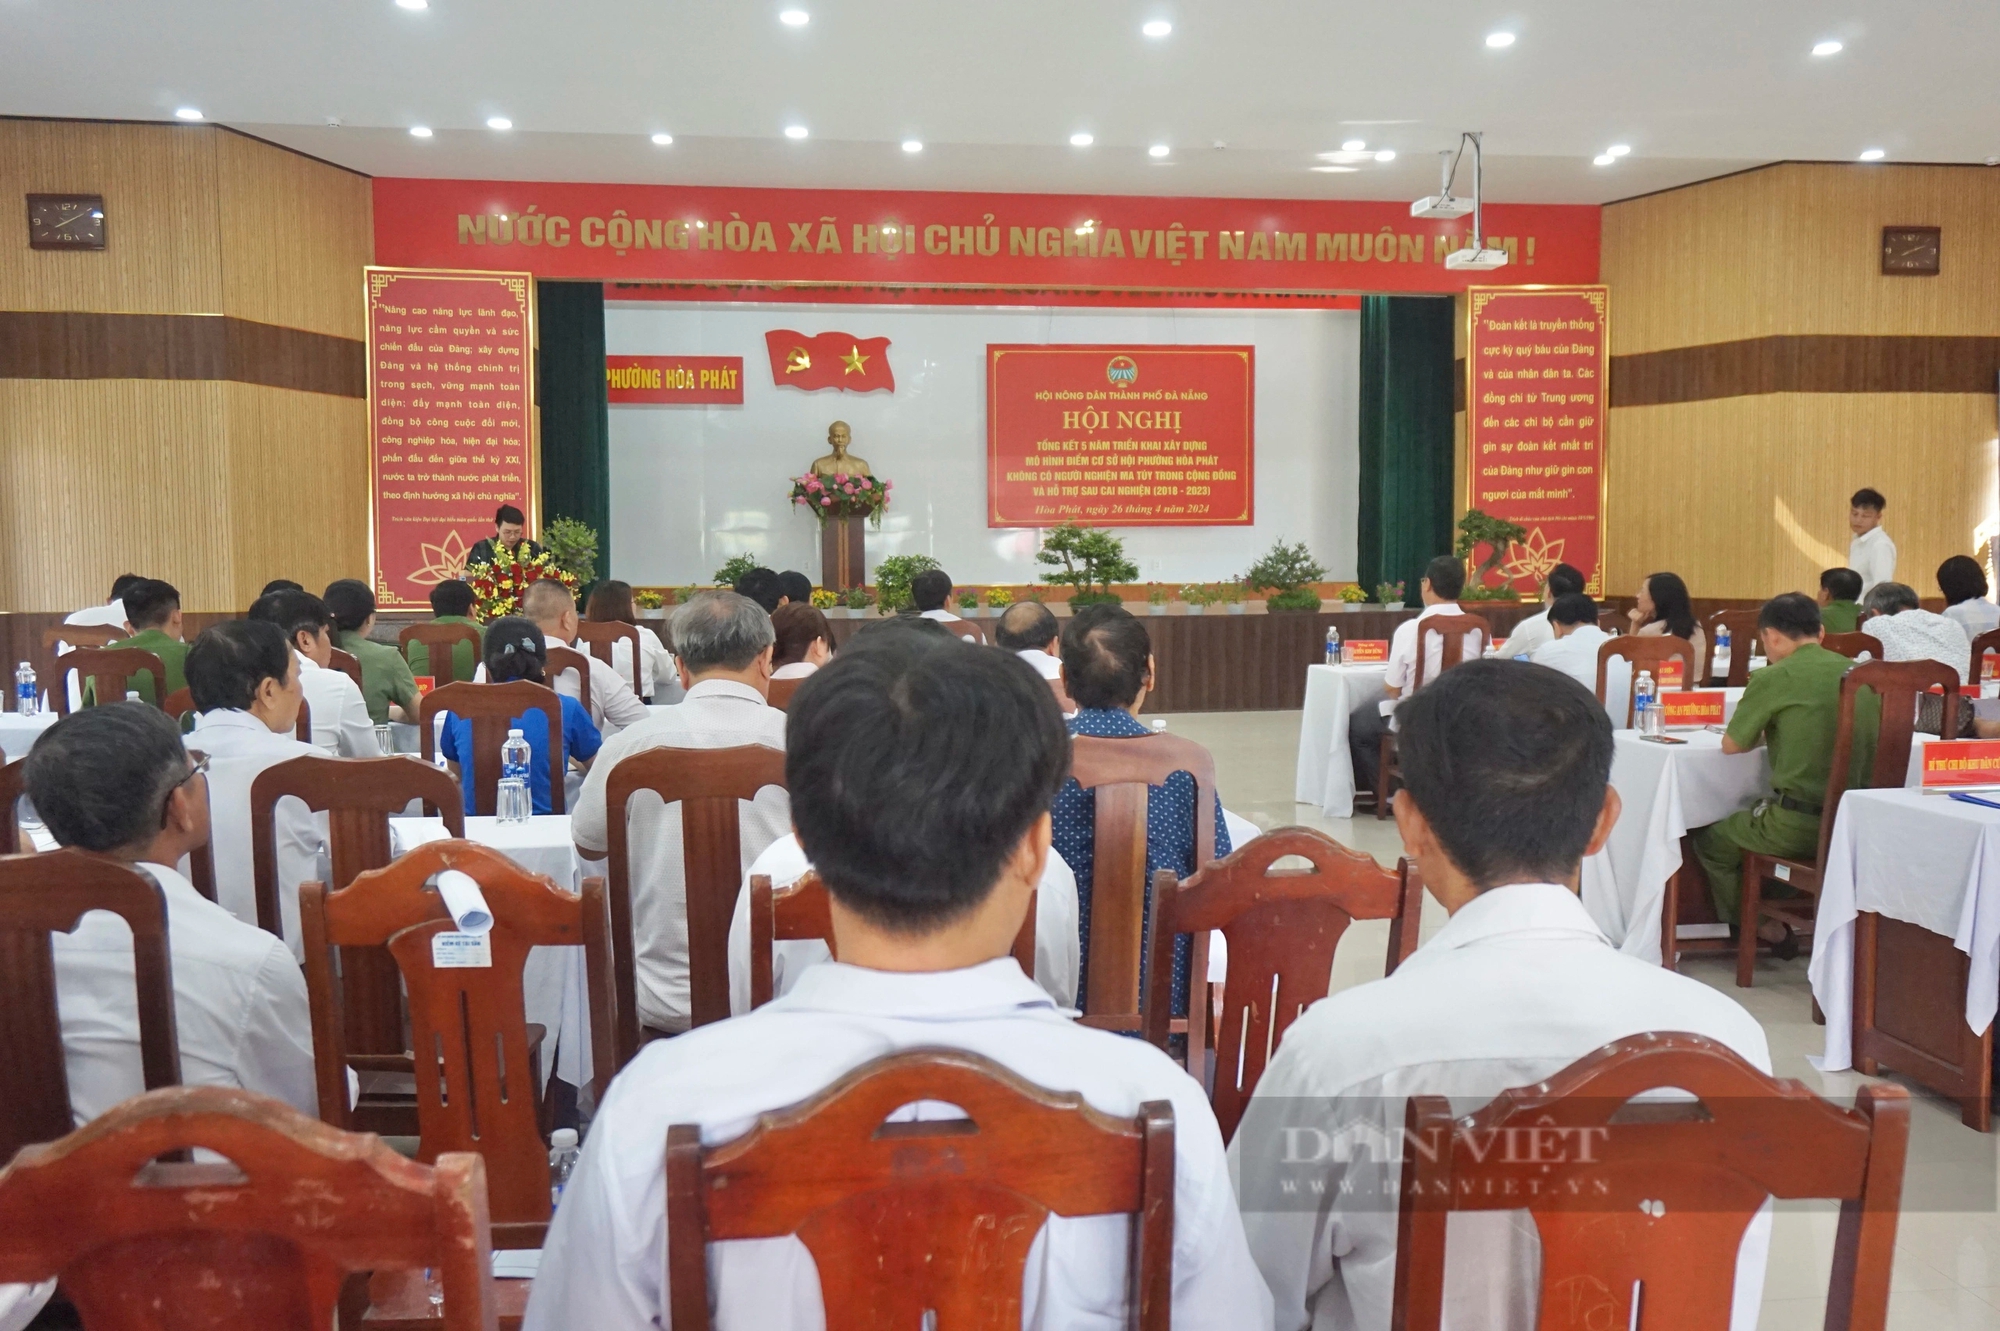 Nông dân Đà Nẵng tuyên truyền, giúp đỡ người sau cai nghiện ma túy hòa nhập cộng đồng- Ảnh 1.